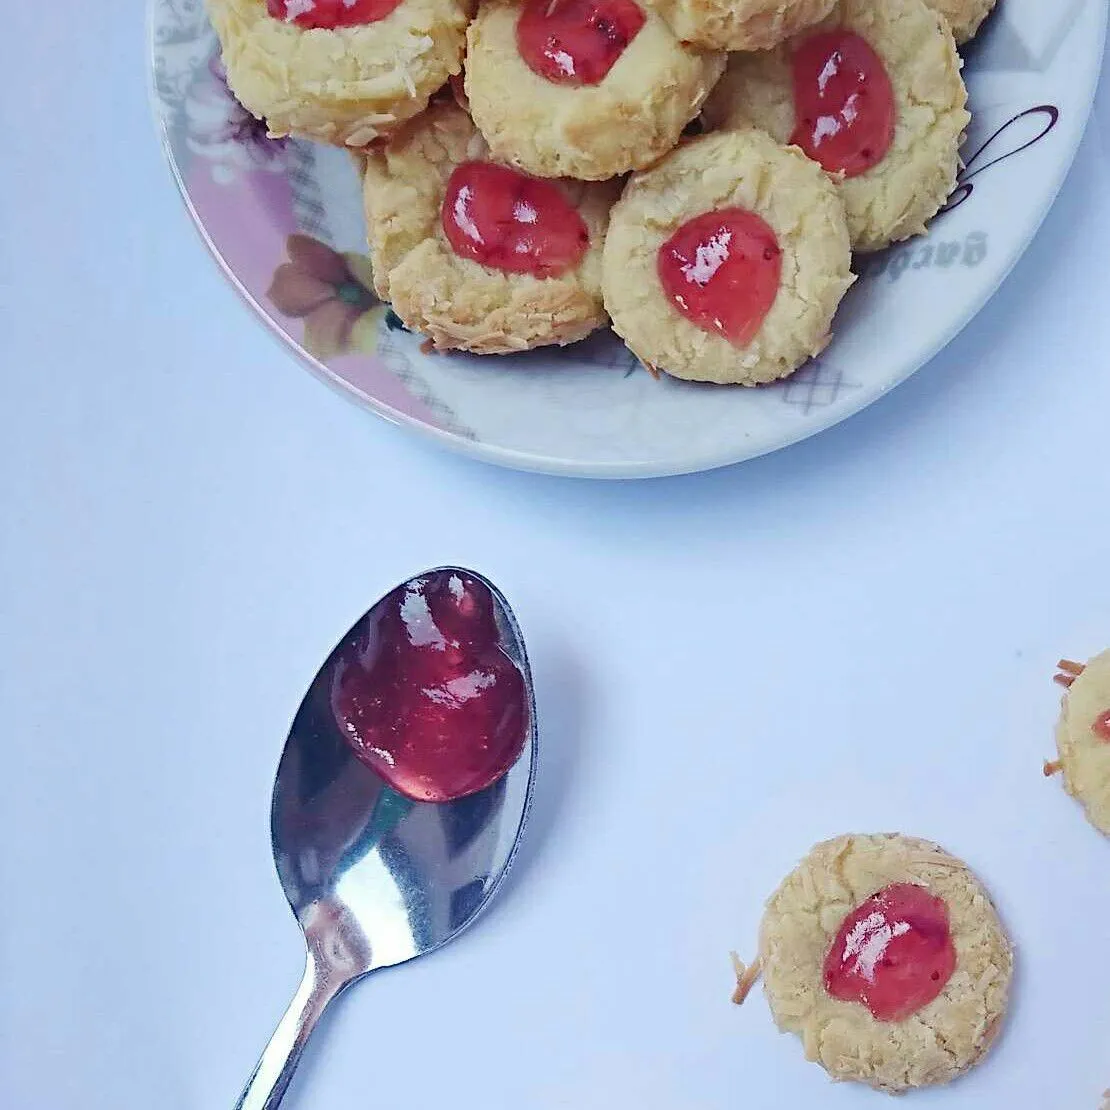 Strawberry Thumbprint Cookies #JagoMasakMinggu11